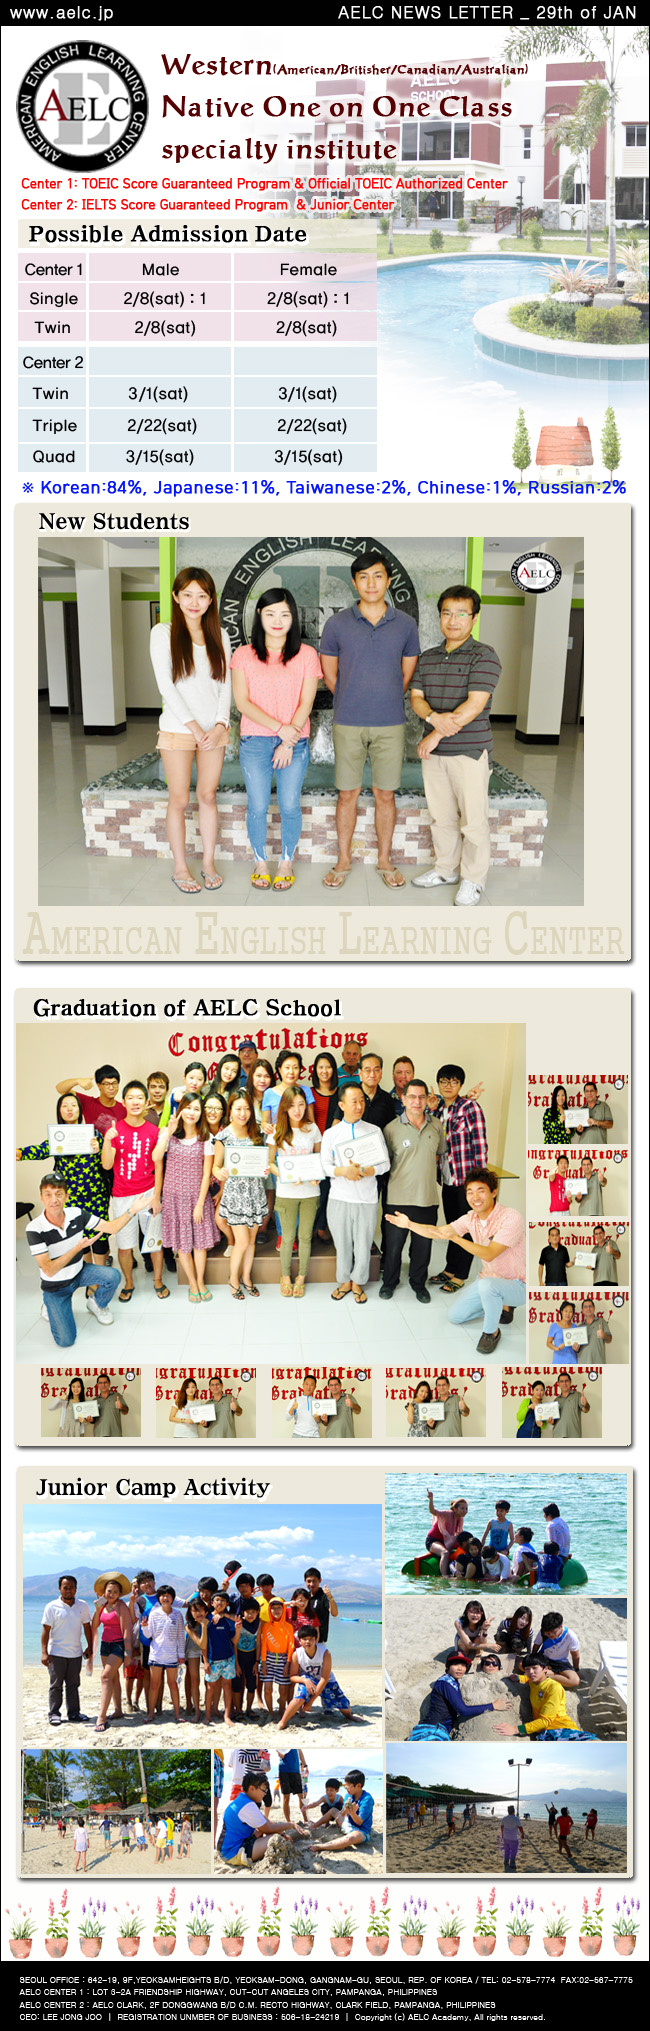 AELC_20140129 newsletter.jpg